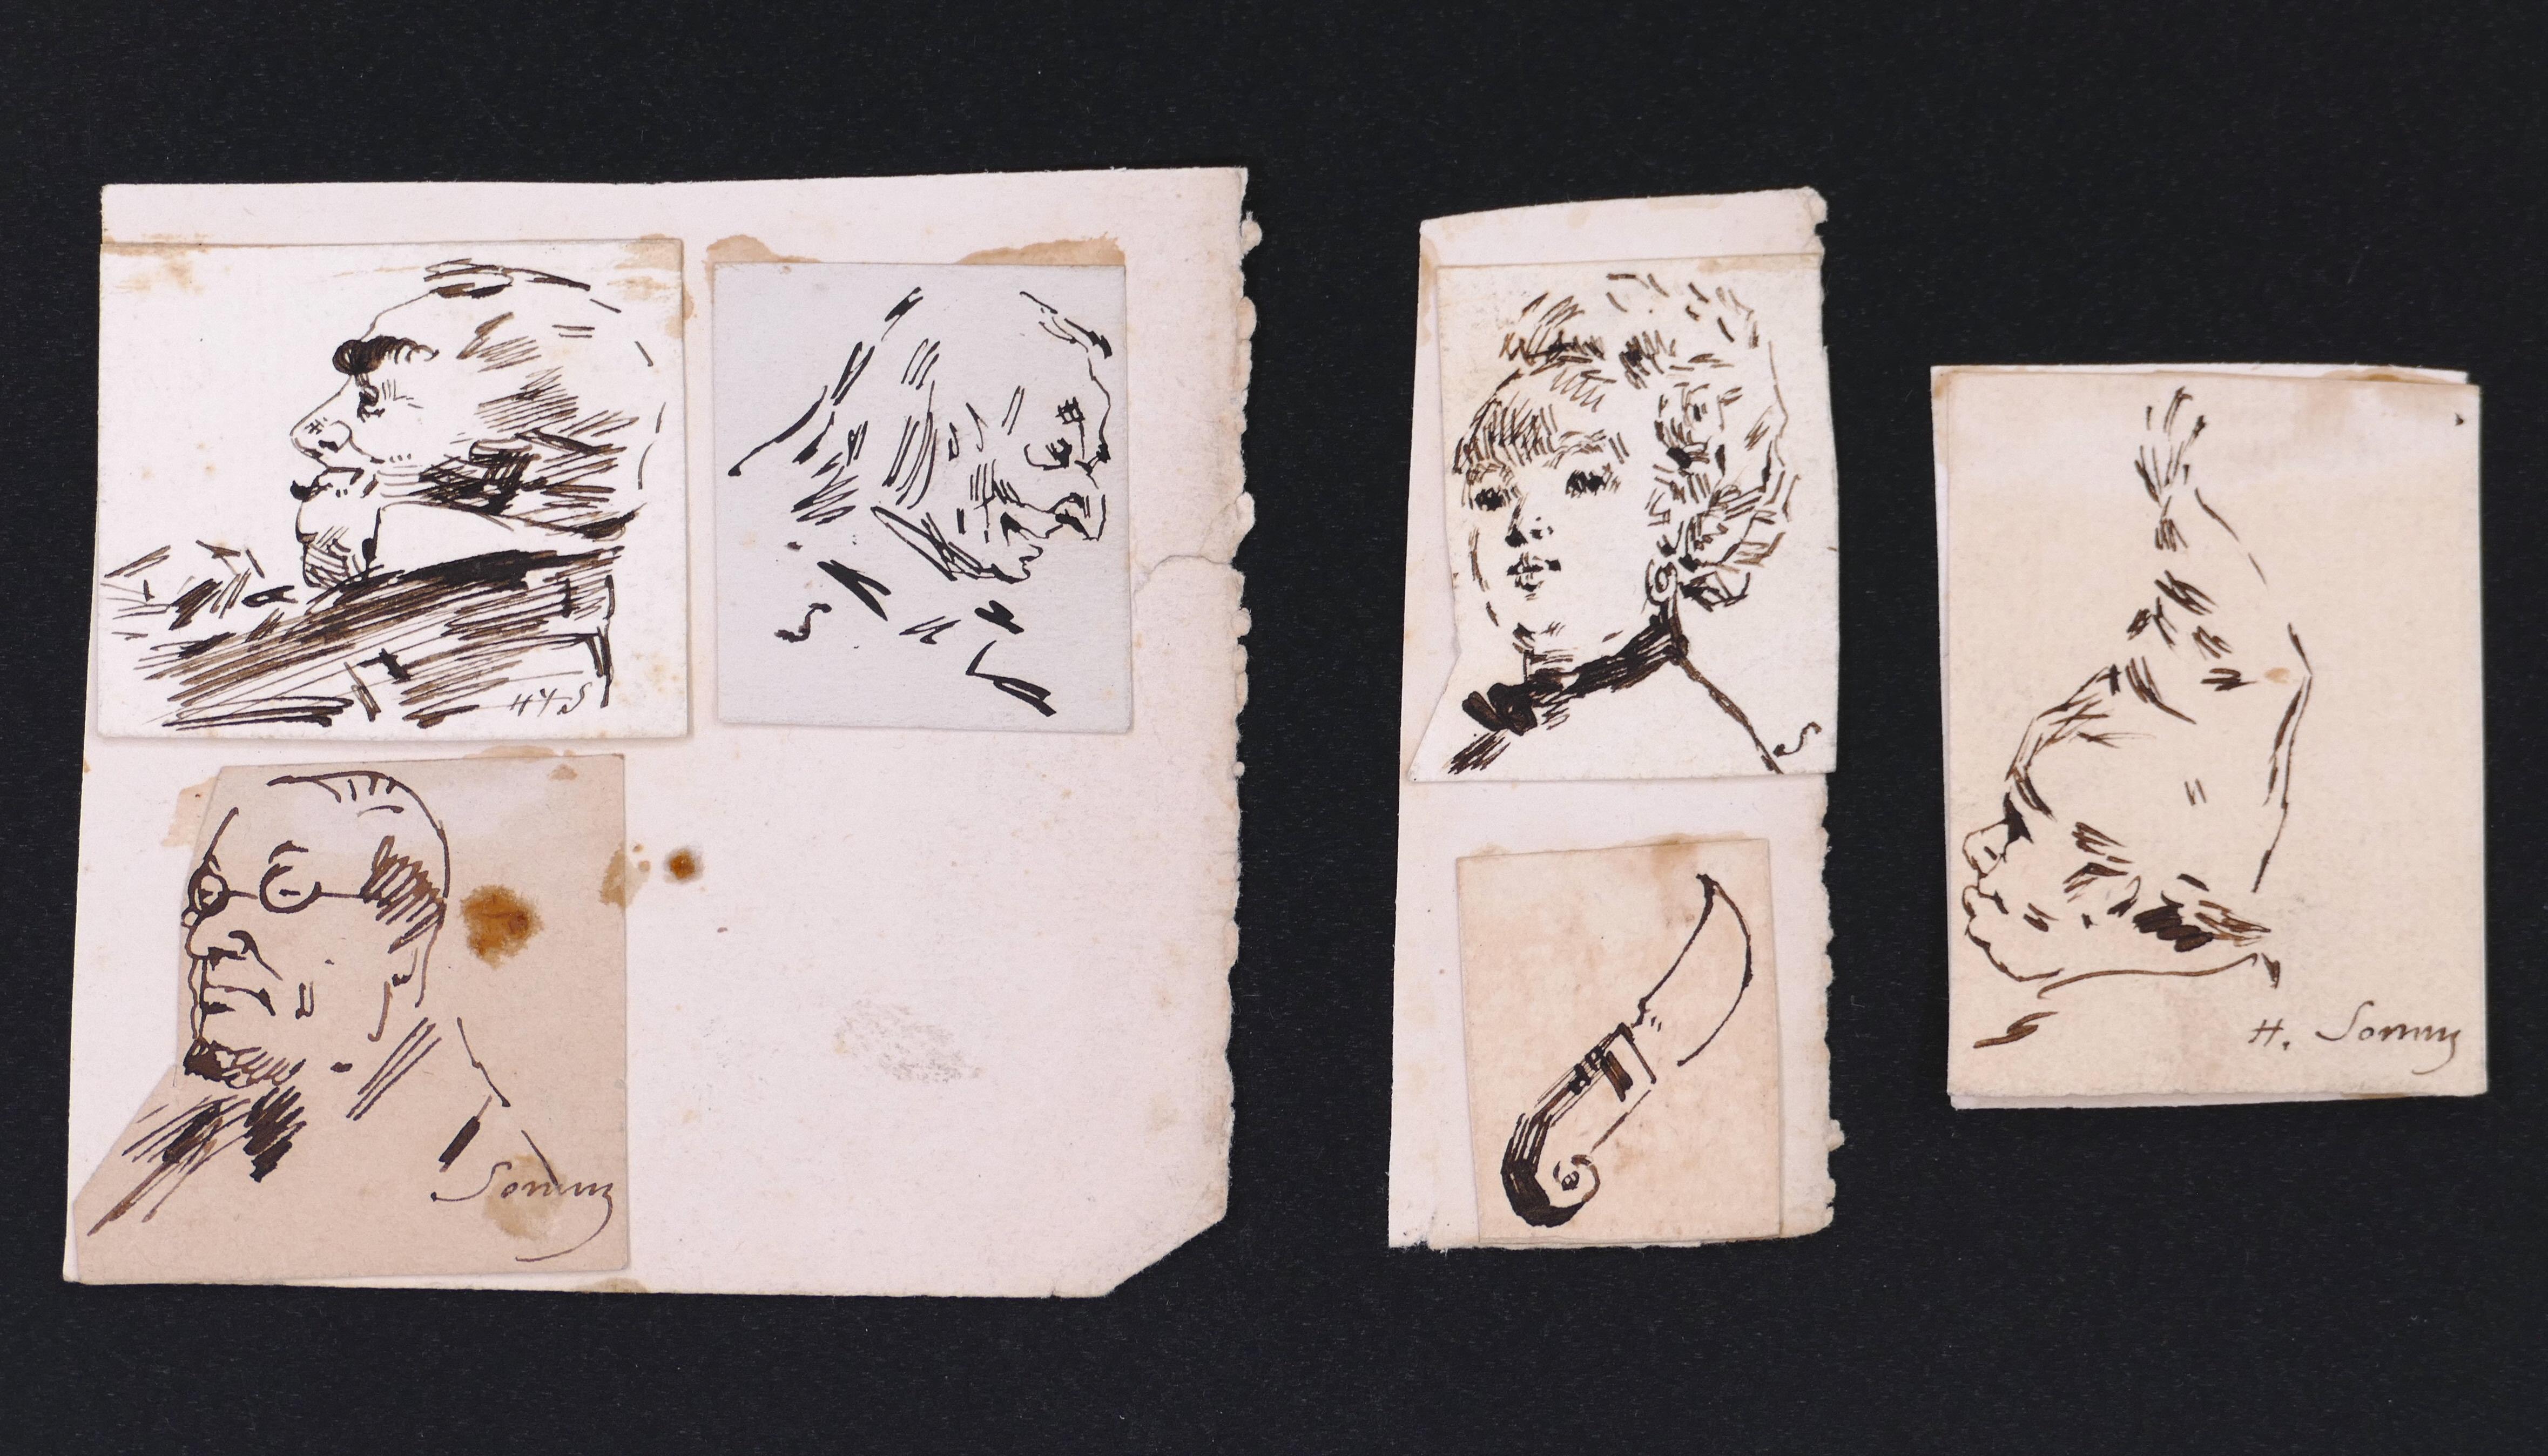 Porträts – Original-Tintezeichnungen auf Papier von H. Somm – Ende des 19. Jahrhunderts